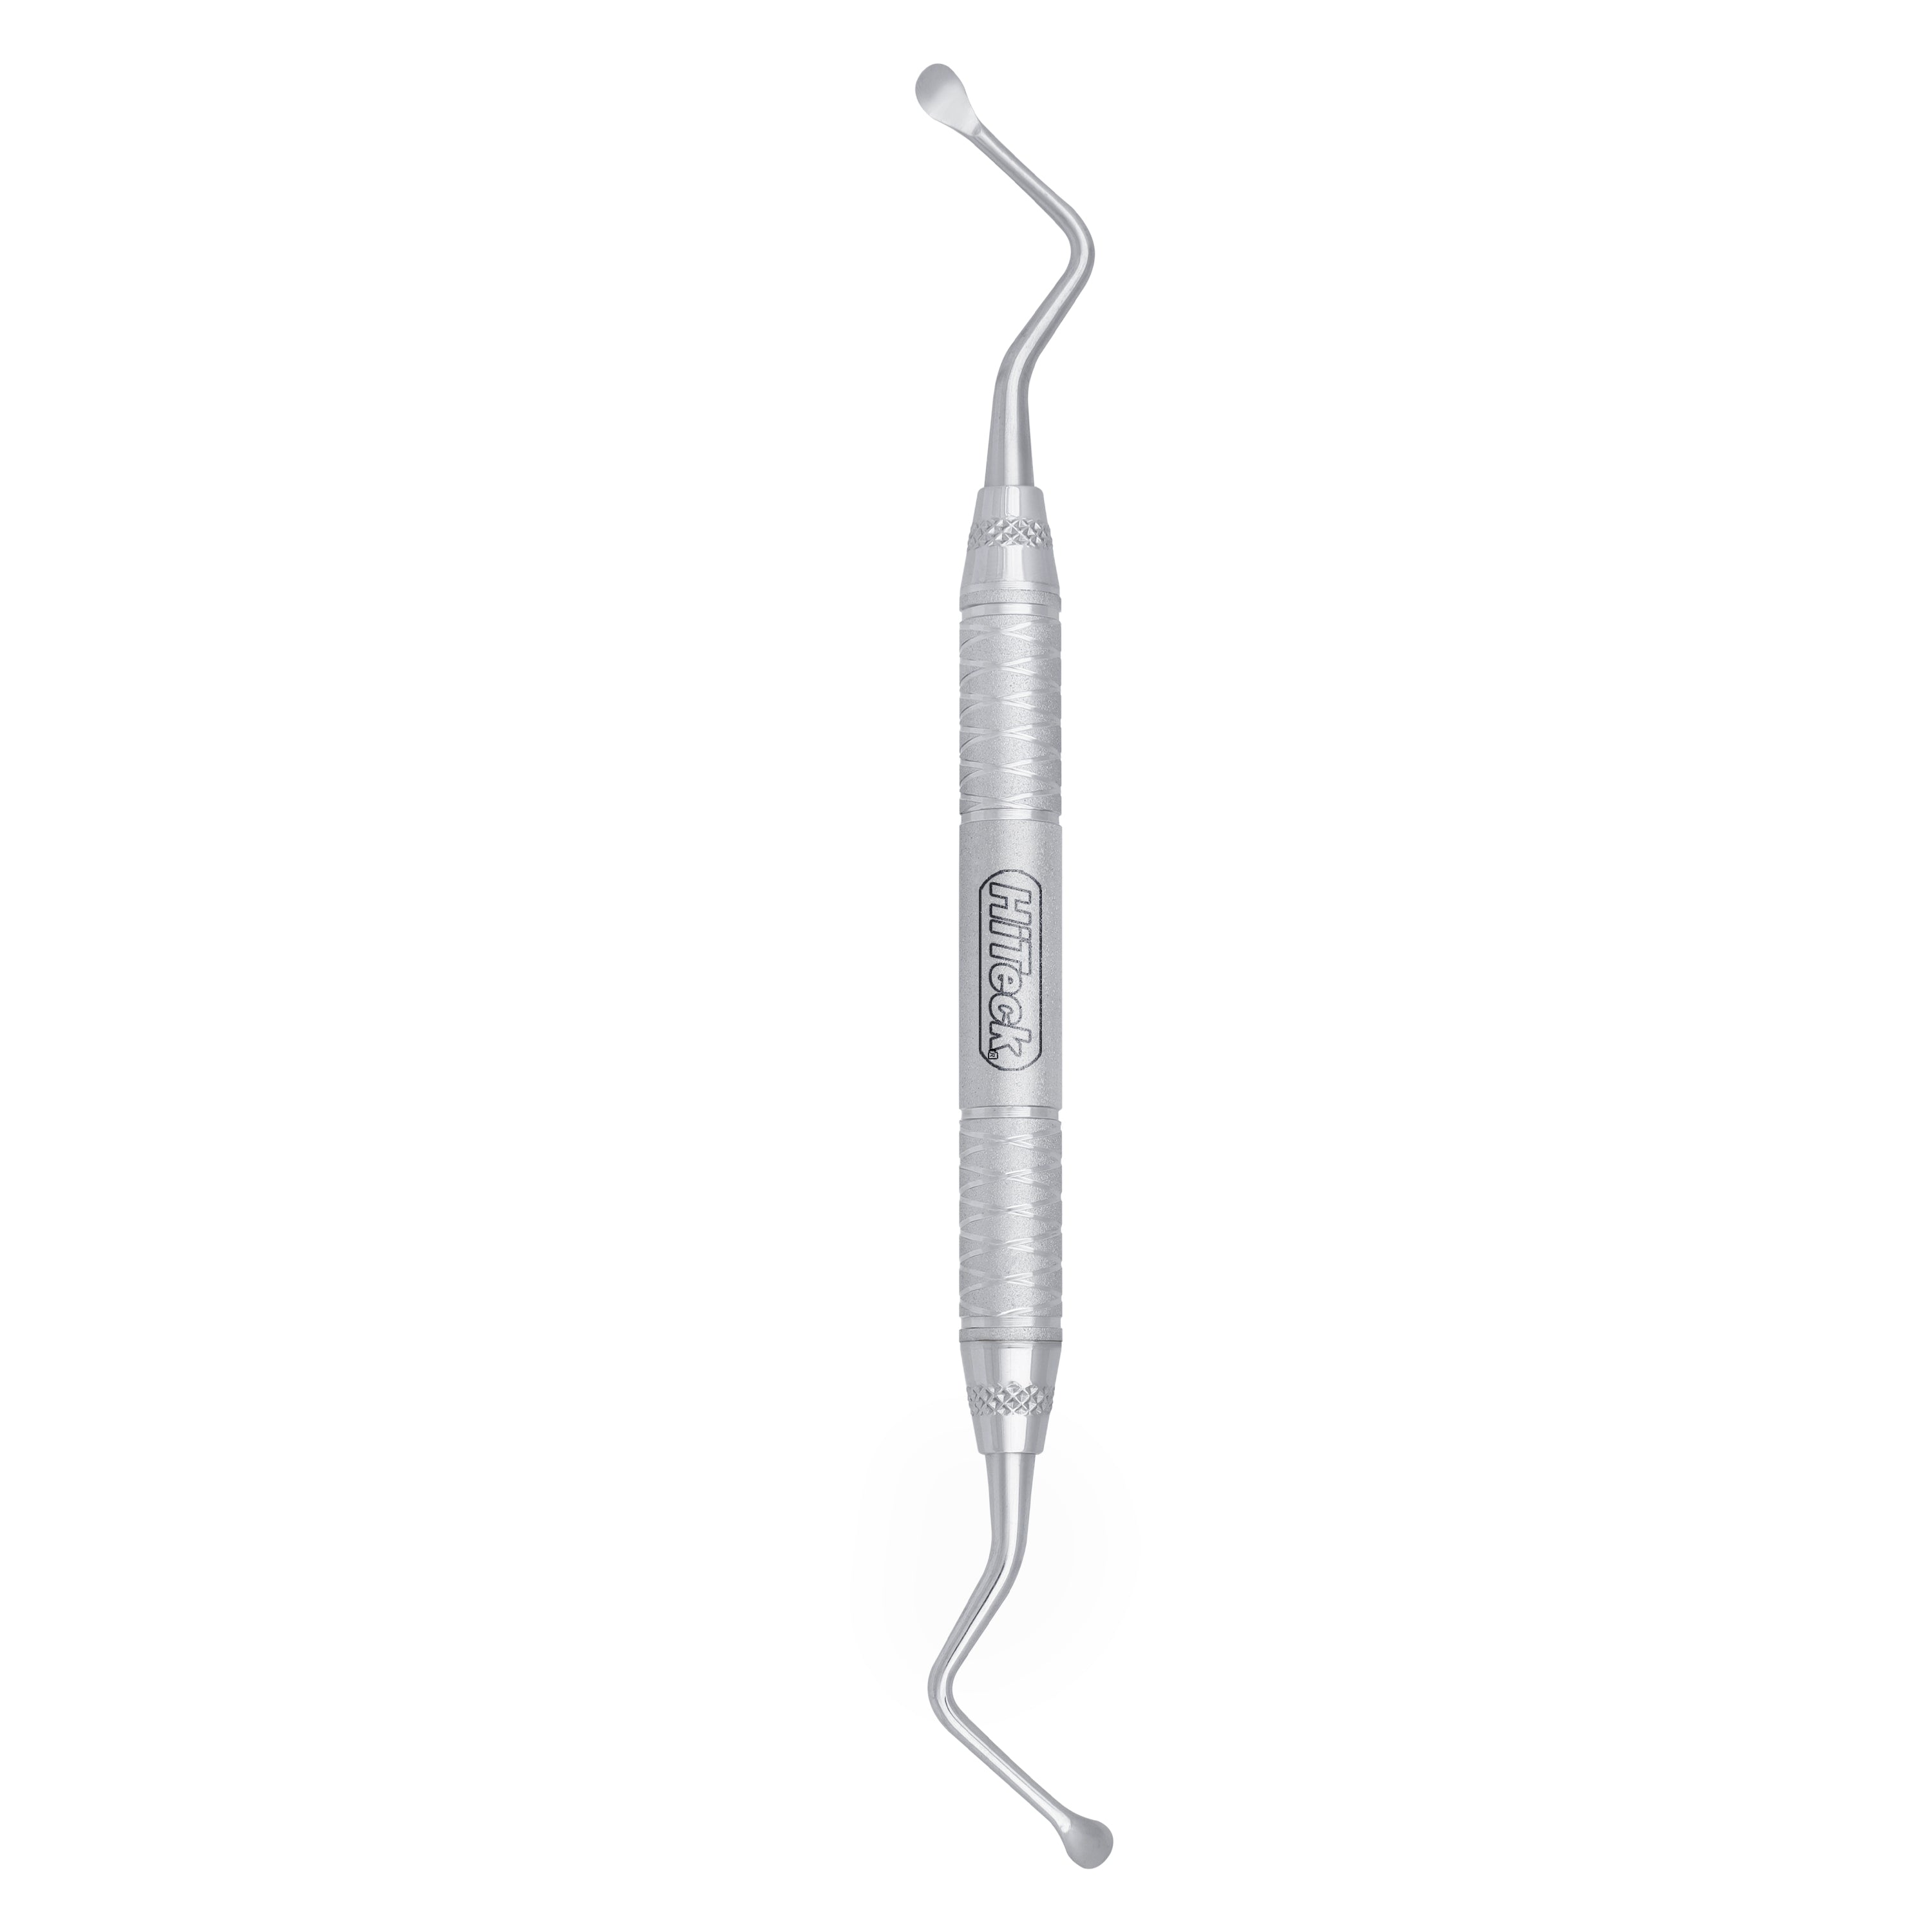 88 Lucas Spoon Shape Surgical Curette, 4.7MM - HiTeck Medical Instruments